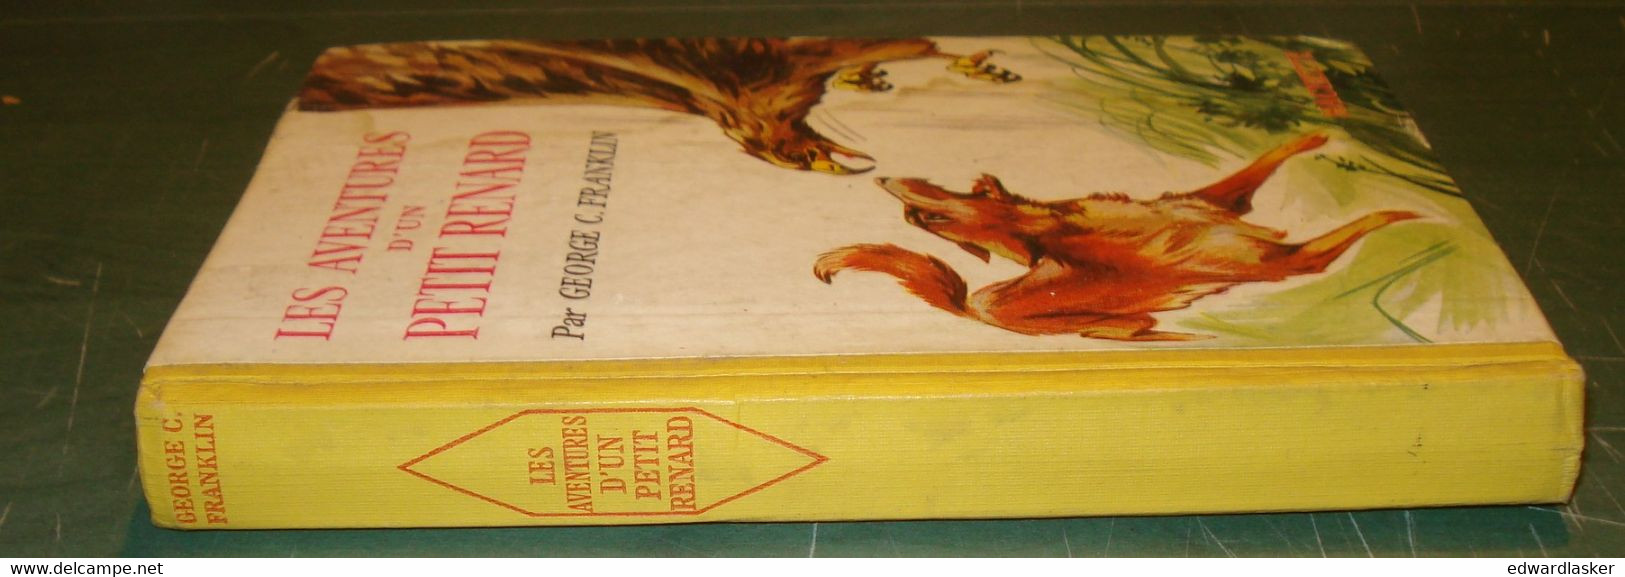 Les Aventures d'un Petit Renard //Georges C. Franklin - Hachette - 1957